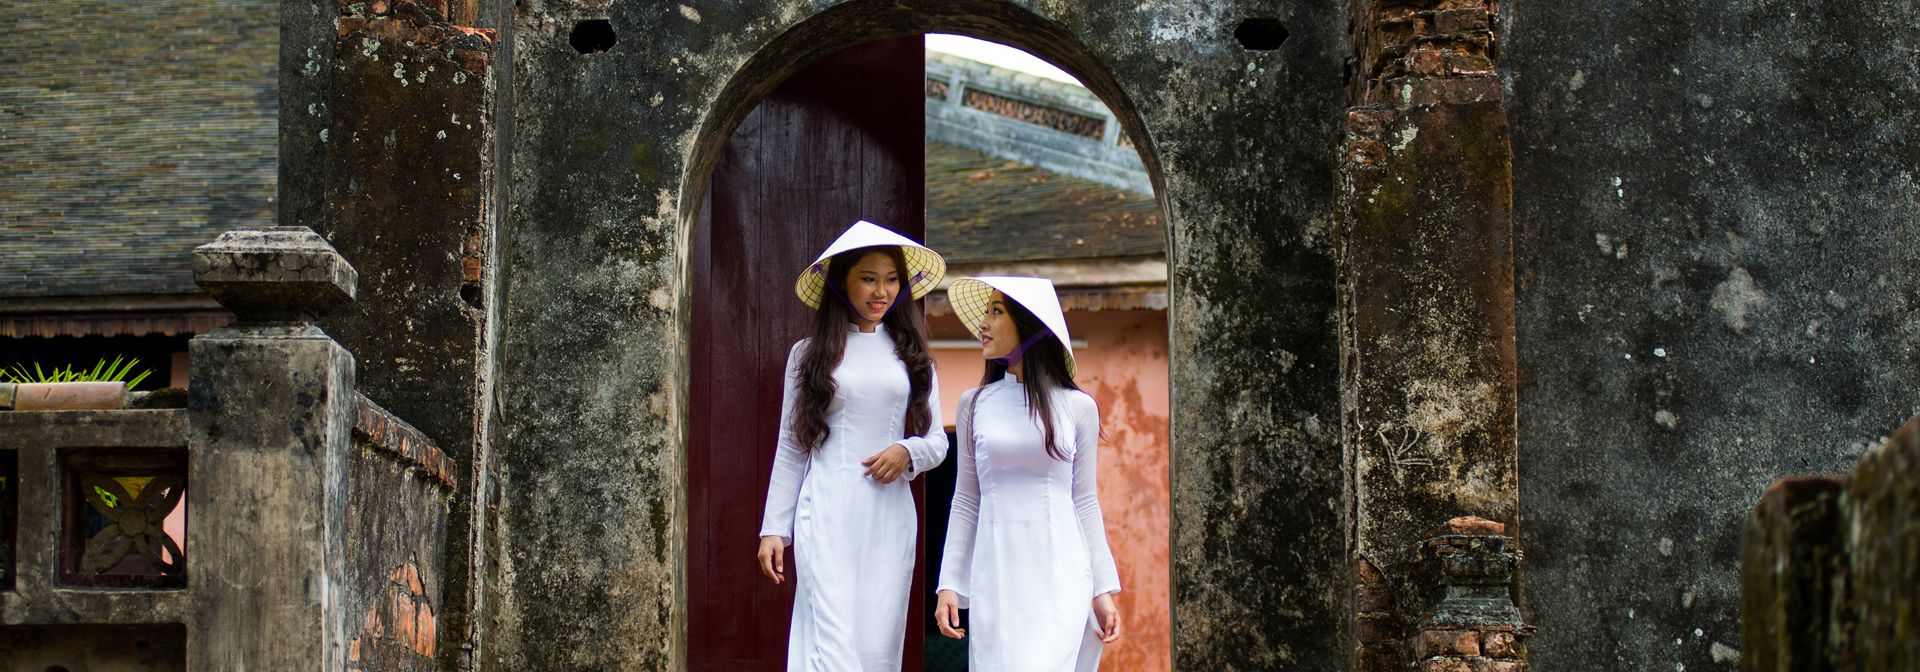 Vietnam - vietnam_befolkning_pige_hvid kjole_01